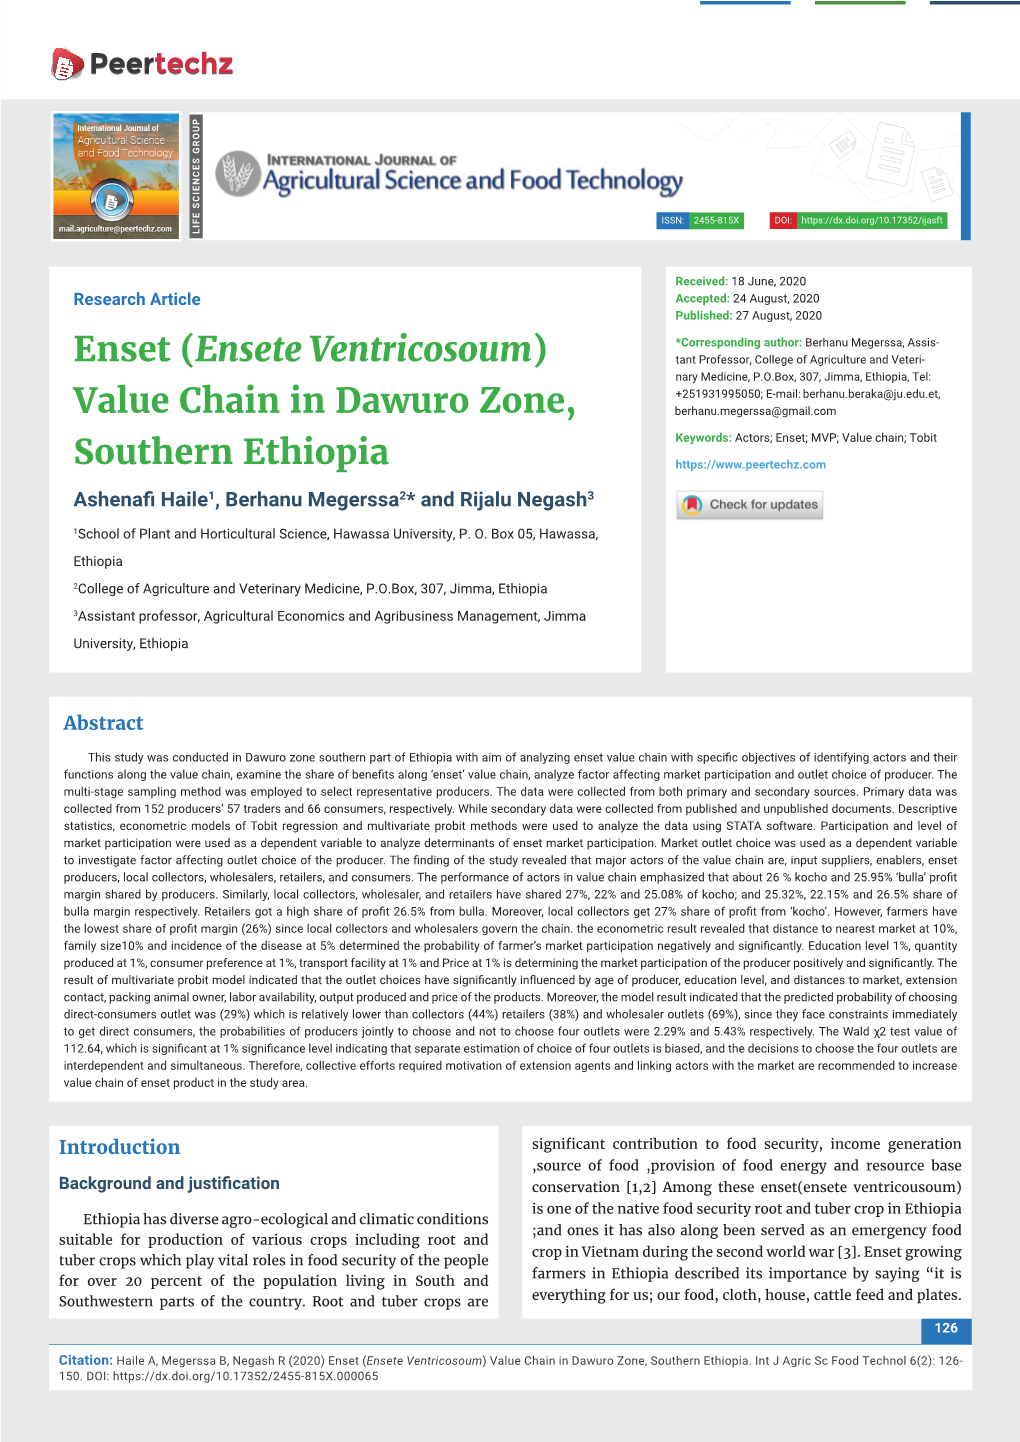 (Ensete Ventricosoum) Value Chain in Dawuro Zone, Southern Ethiopia